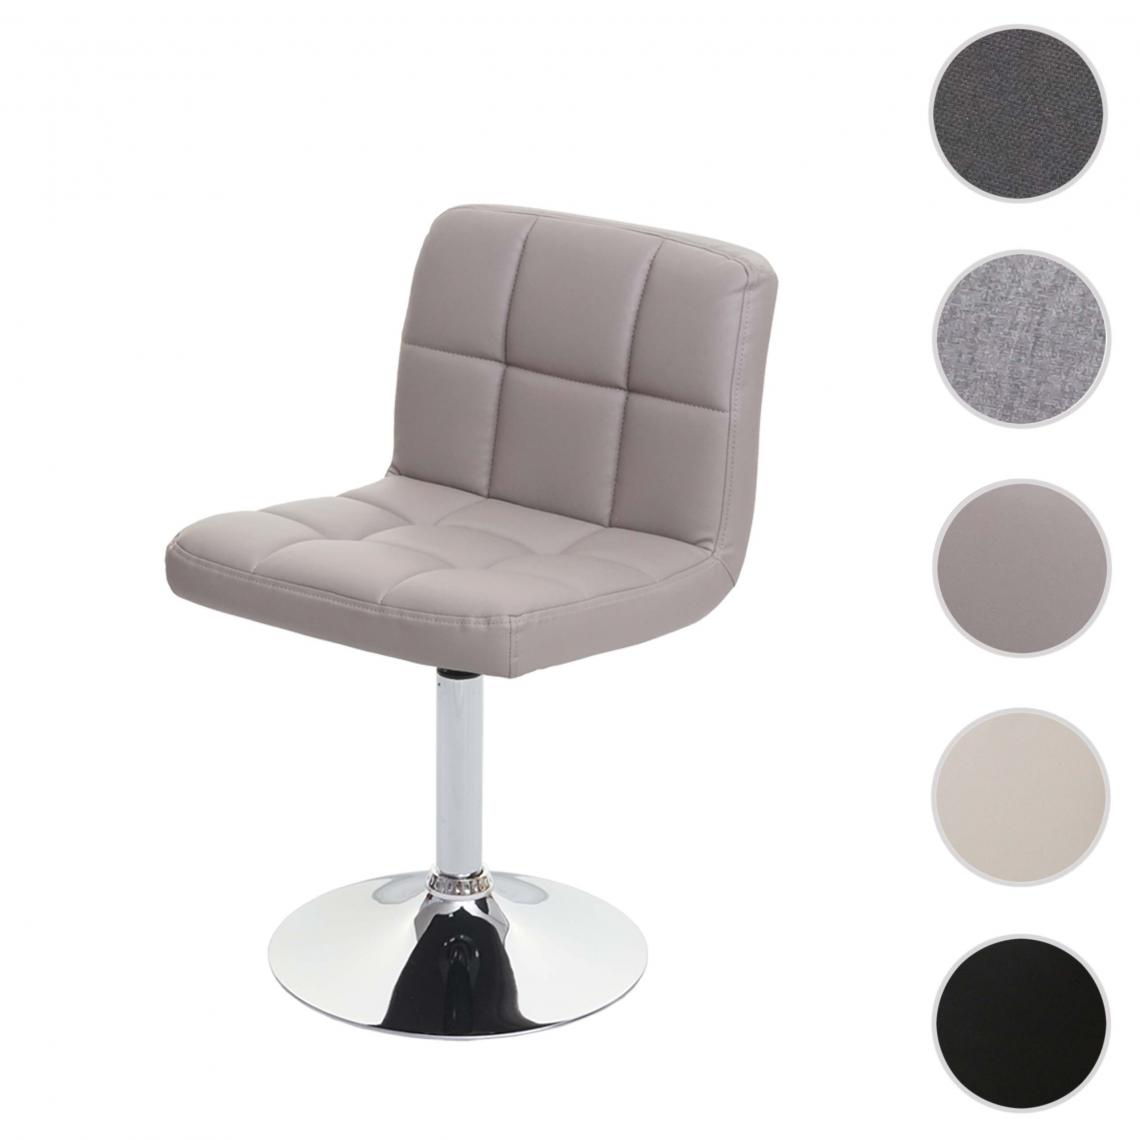 Mendler - Chaise de salle à manger Kavala, chaise de cuisine, pivotante ~ simili cuir taupe-gris base chromée - Chaises